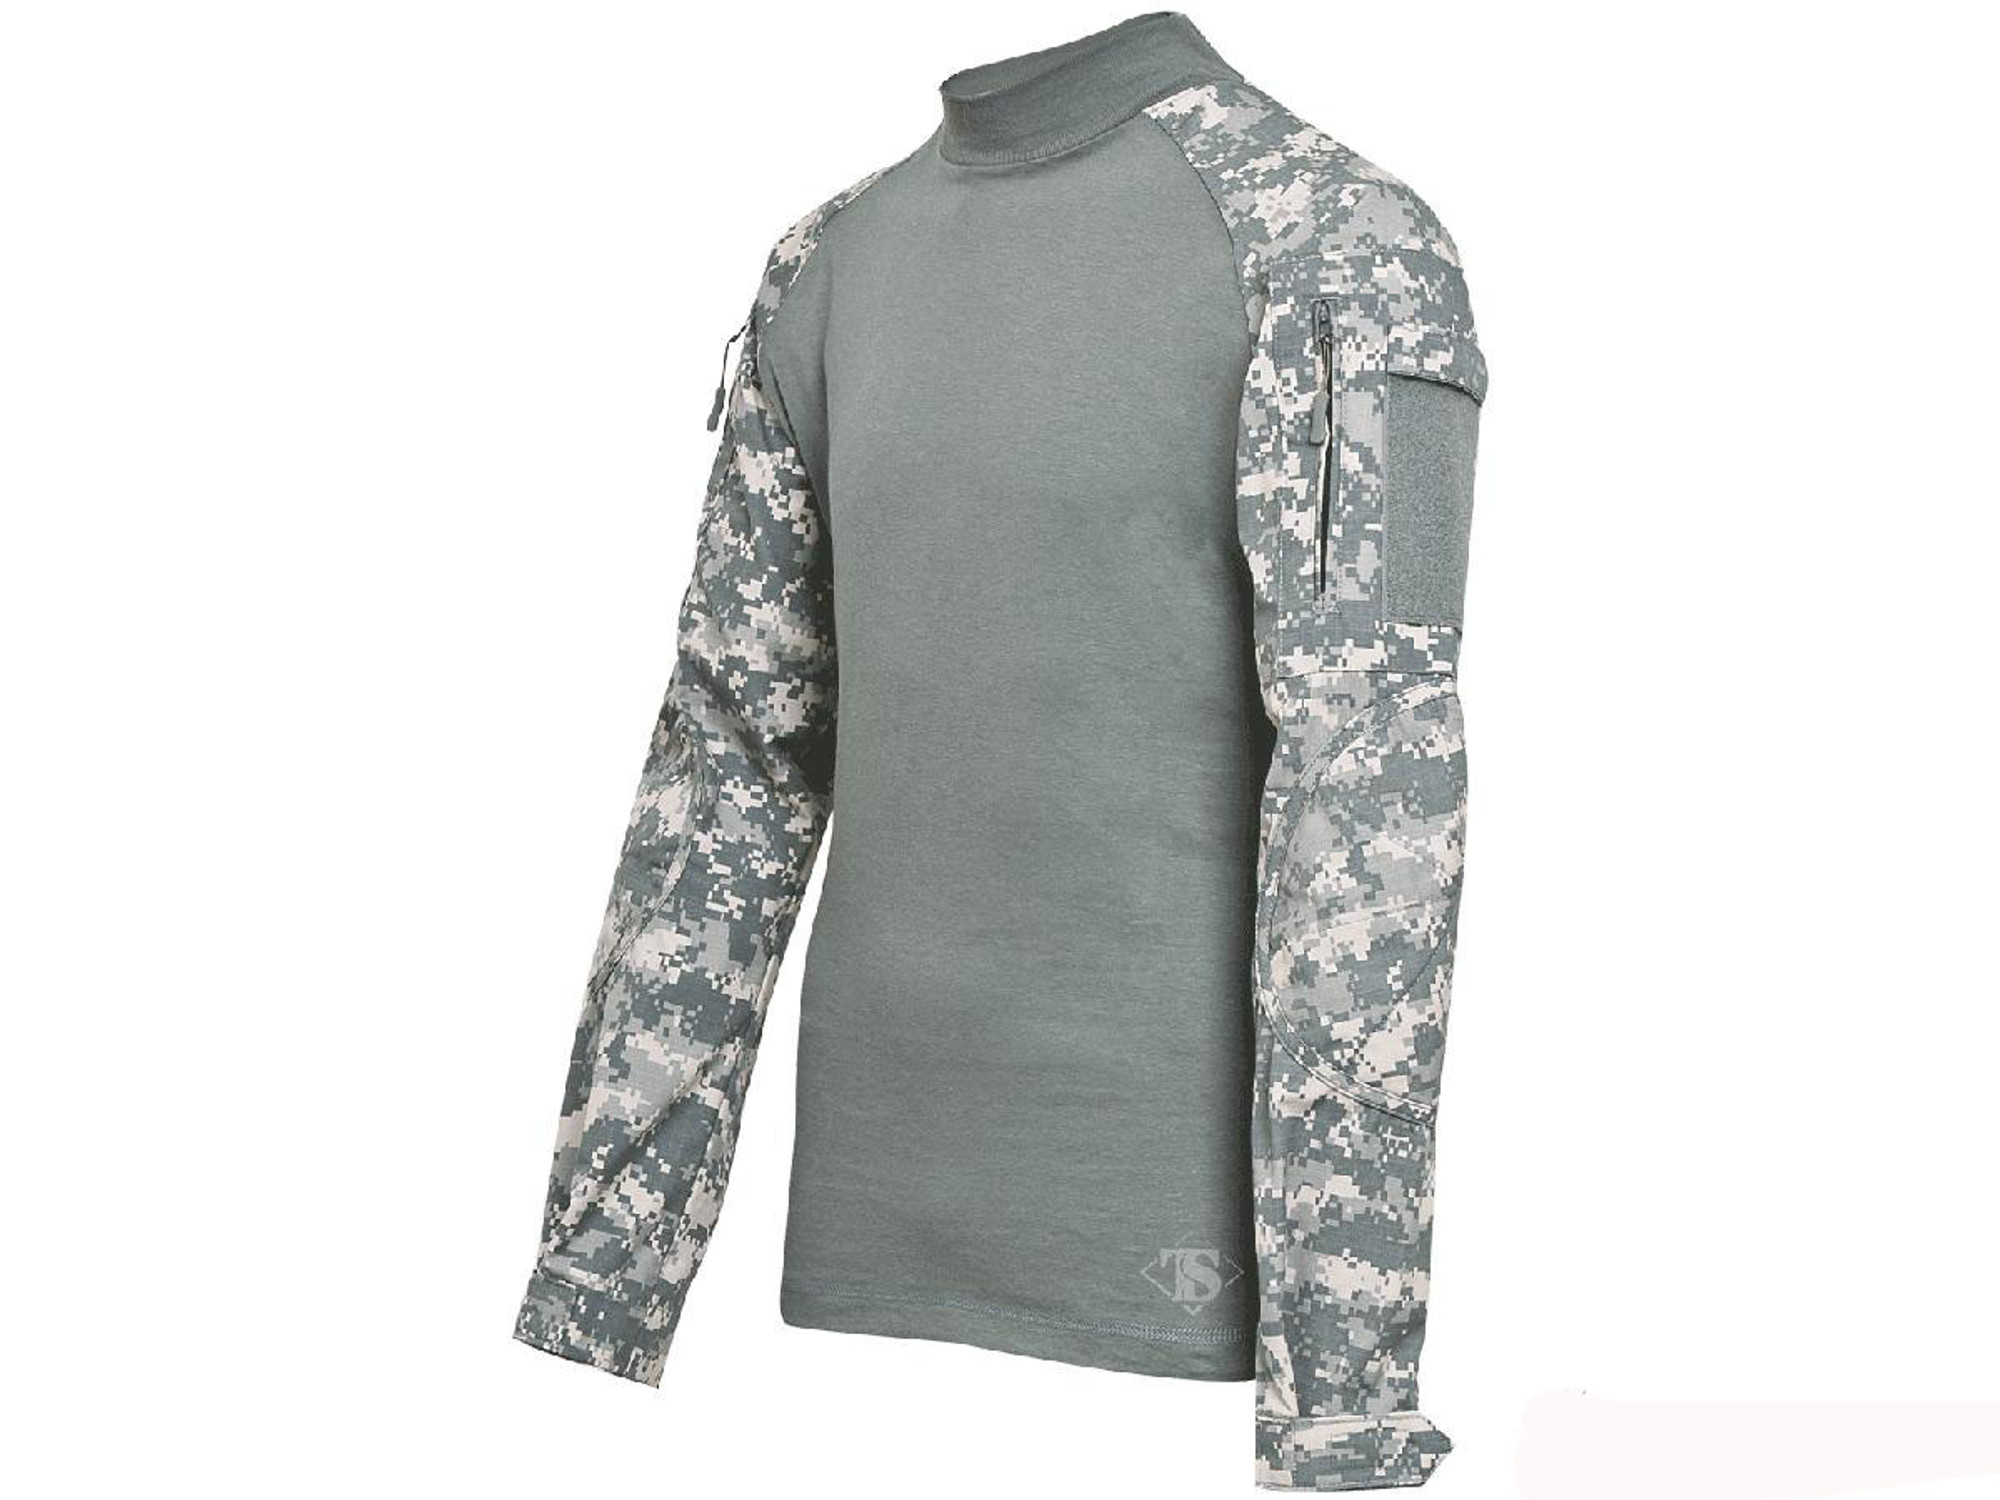 Tru-Spec Tactical Response Uniform Combat Shirt - ACU (Size: Small)